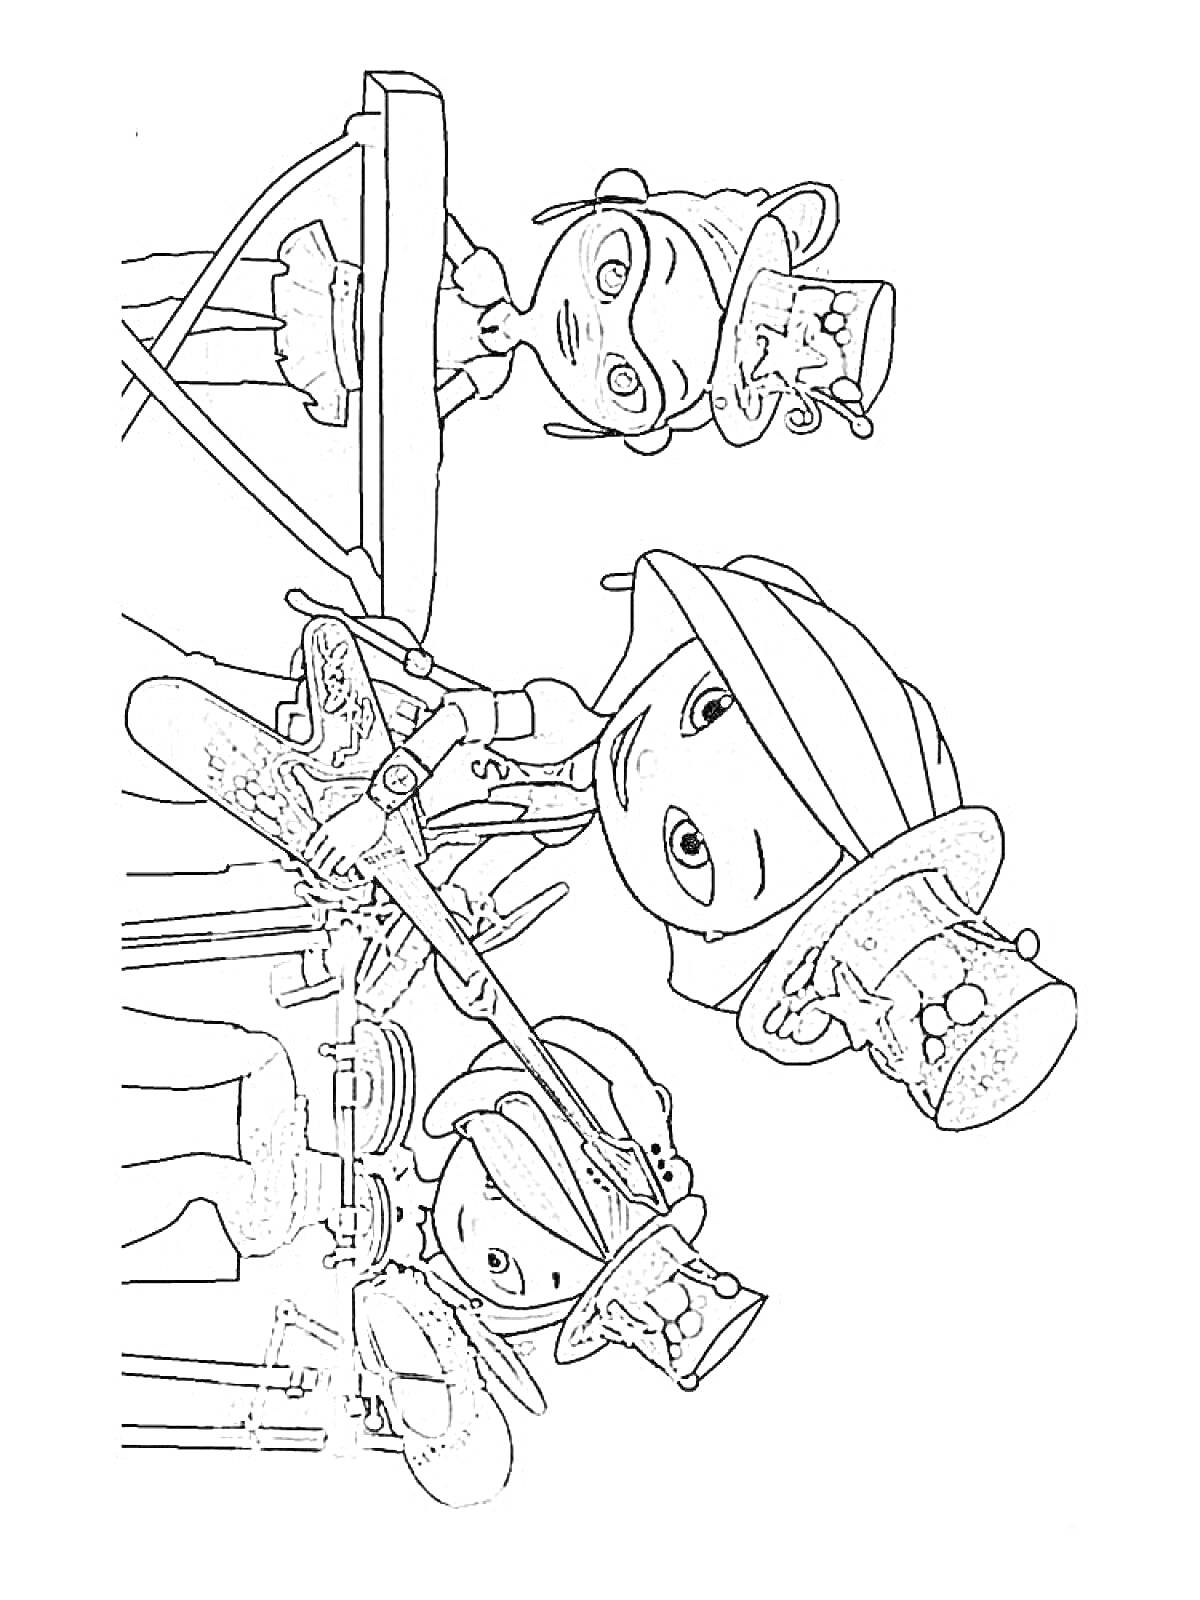 Сказочный патруль на кухне - персонажи в шляпах с чертежами и миксером